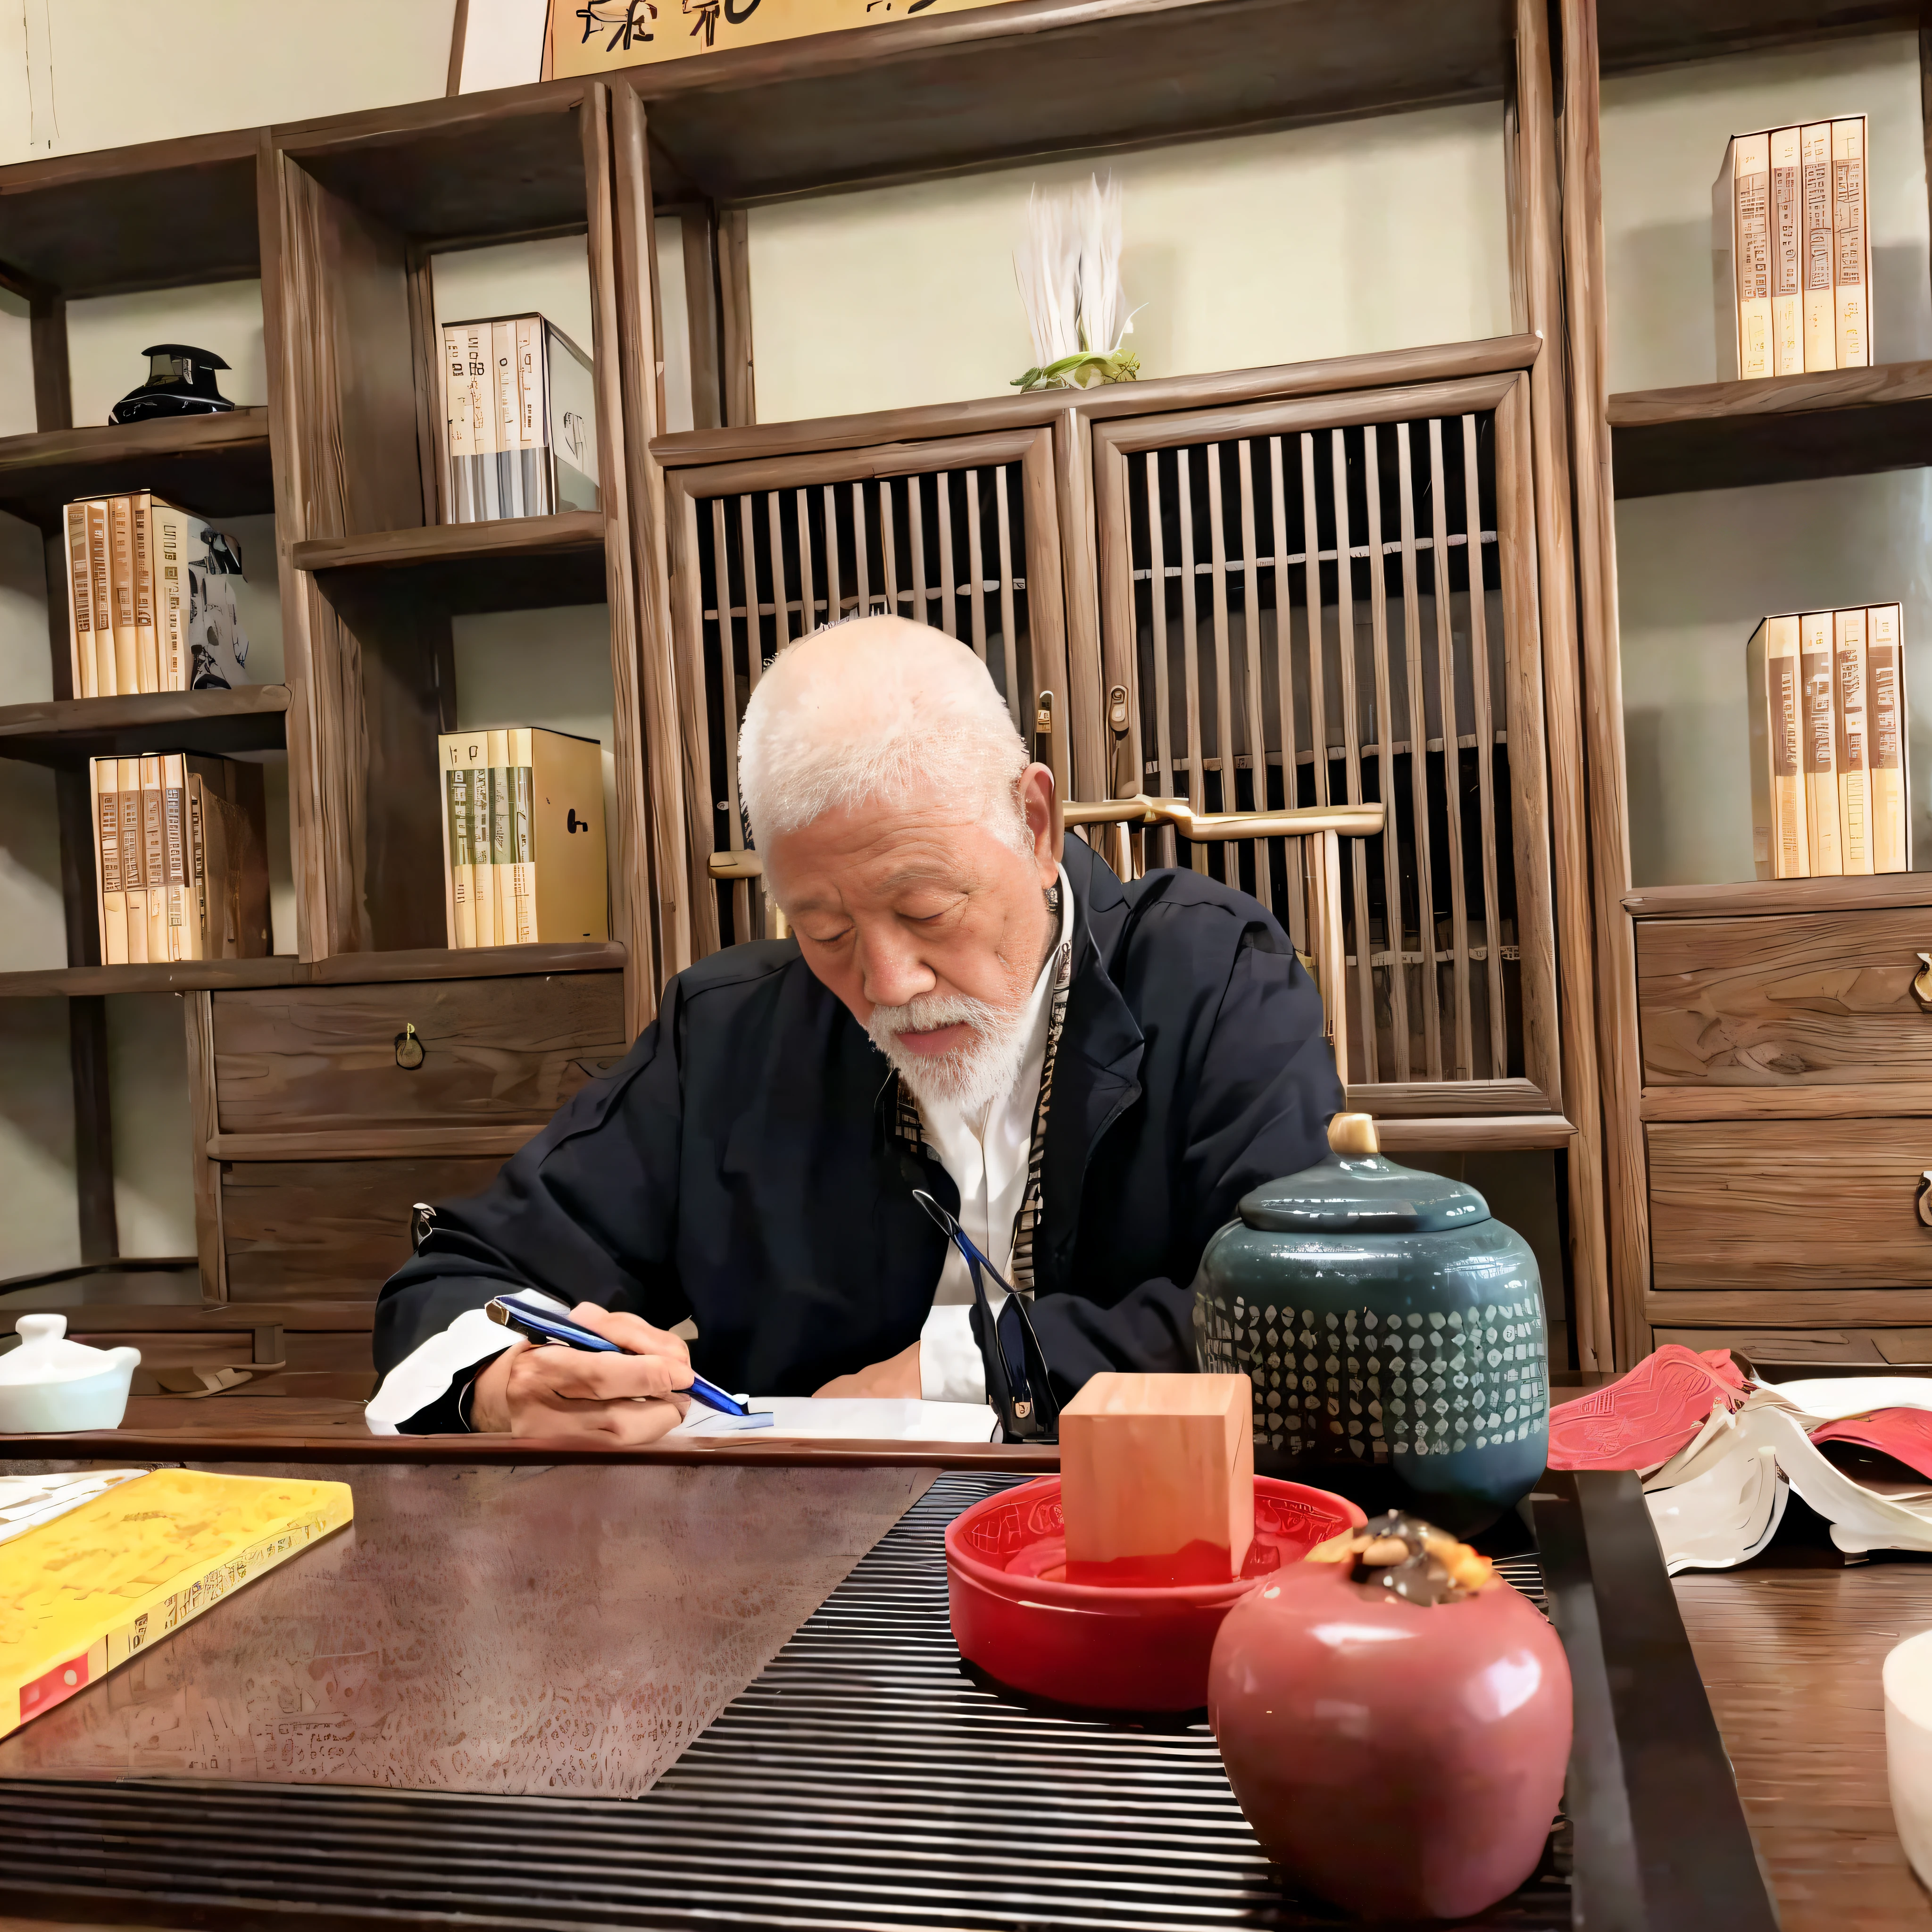 Da saß ein Mann an einem Tisch und schrieb ein Buch, inspiriert von Sesshū Tōyō, er ist etwa 8 0 Jahre alt, Riichi Ueshiba, Chiba Yuda, inspiriert von Itō Jakuchū, inspiriert von Wu Daozi, inspiriert von Kanō Tanshin